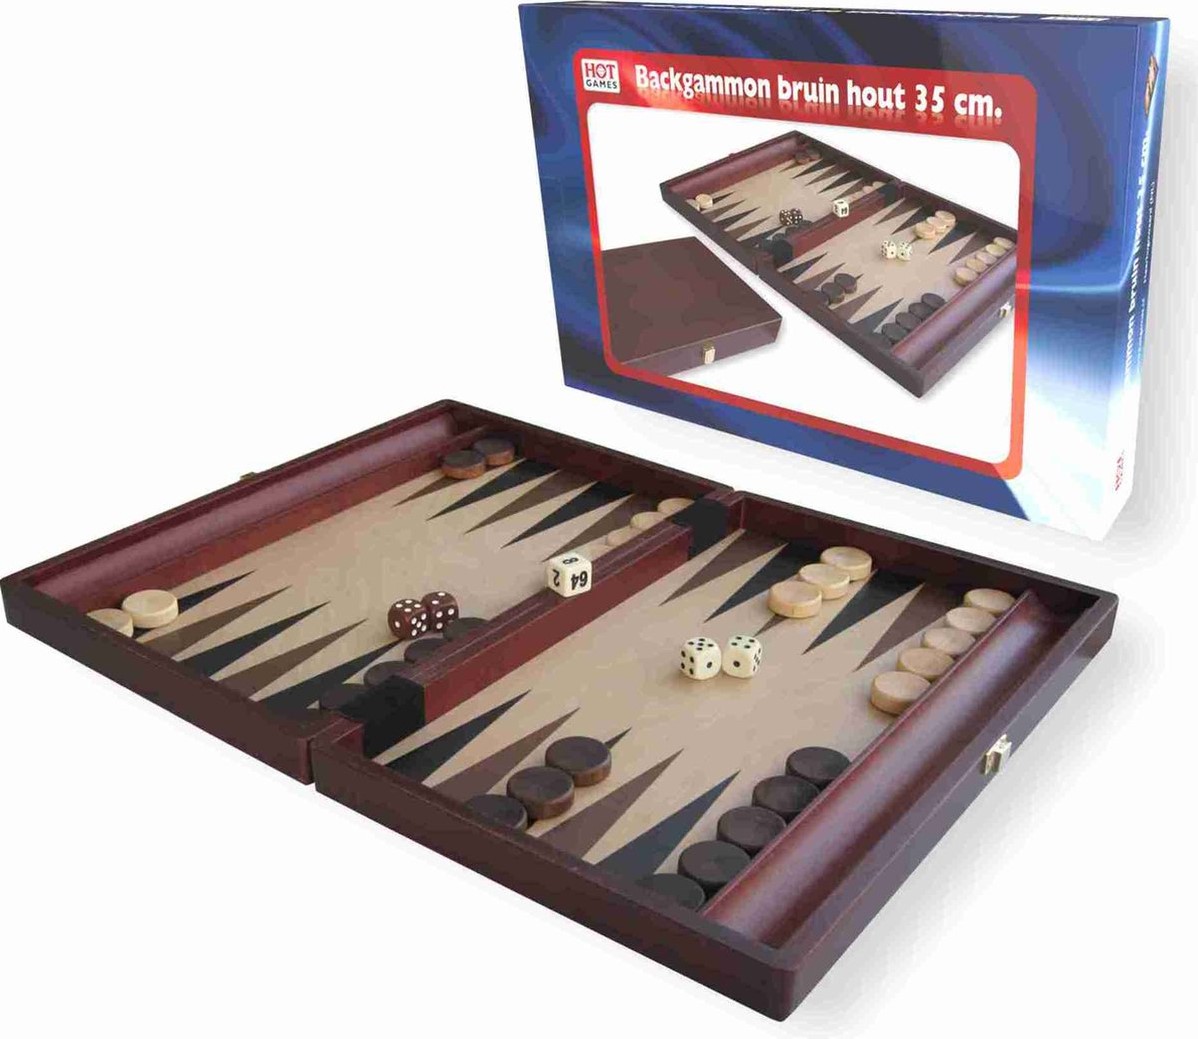 Wonen Vleugels Surrey Backgammon Koffer Hout Bruin 35x23 cm - kopen bij Spellenrijk.nl